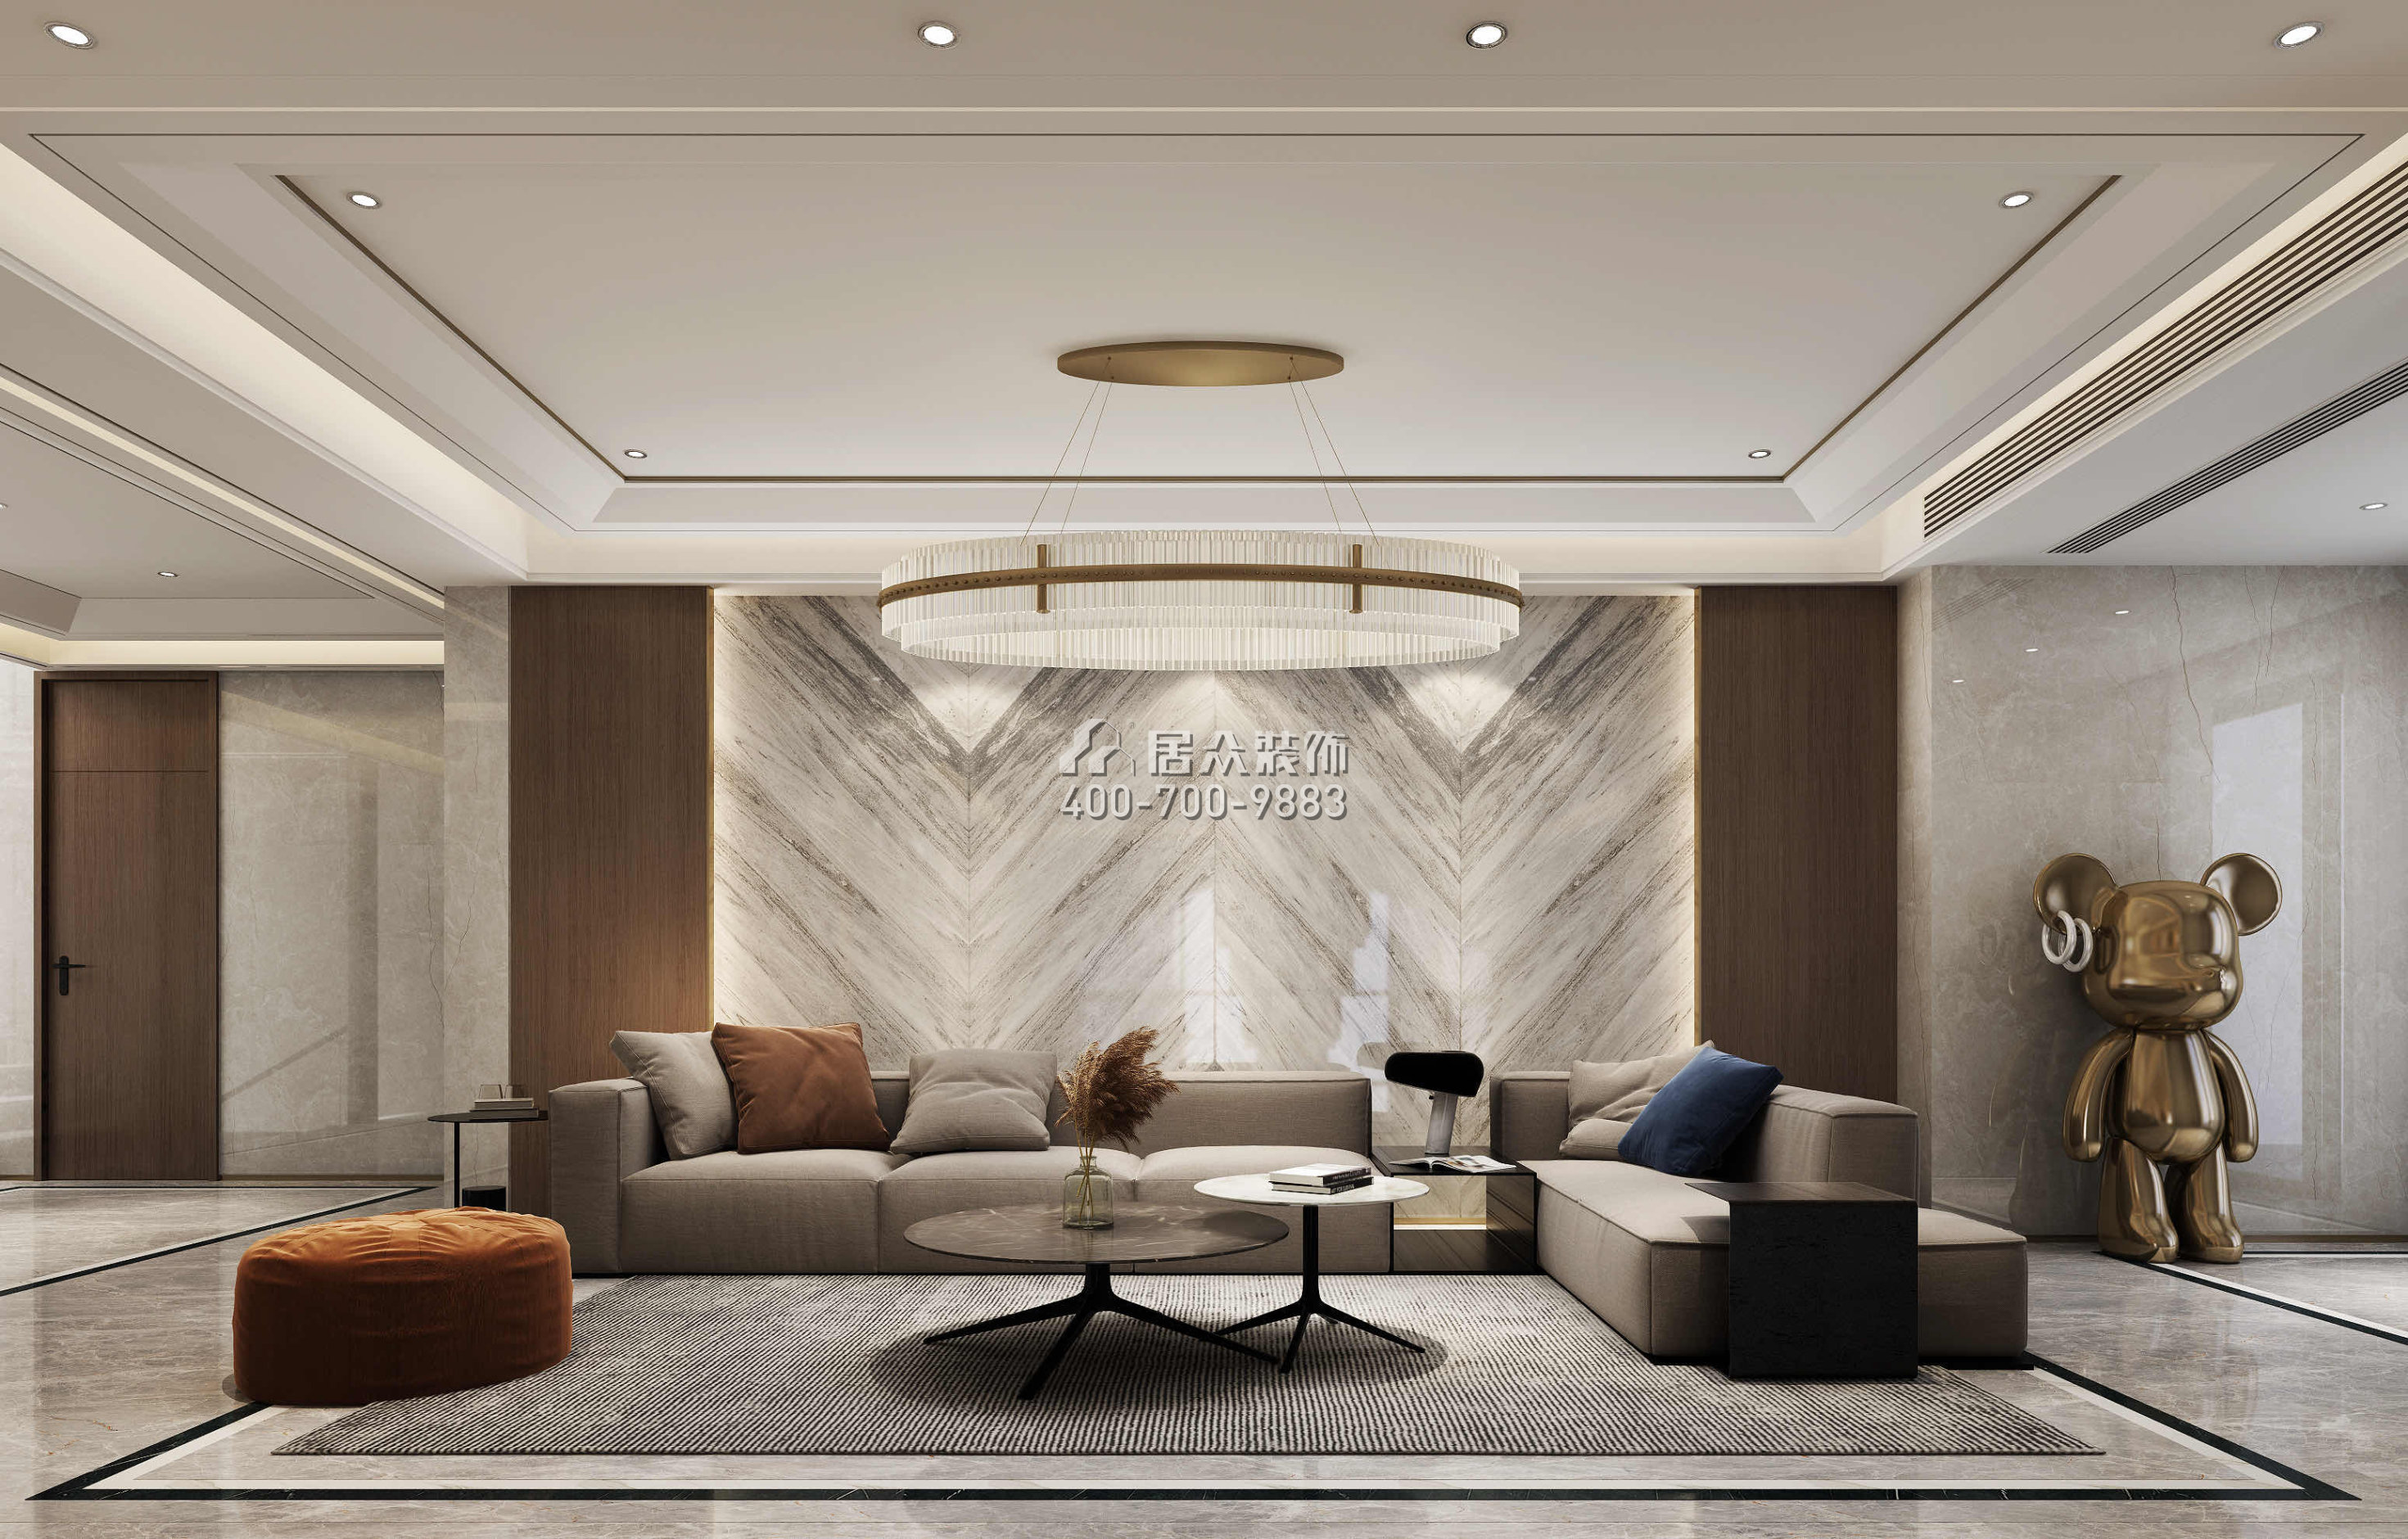 觀園1500平方米現代簡約風格別墅戶型客廳裝修效果圖